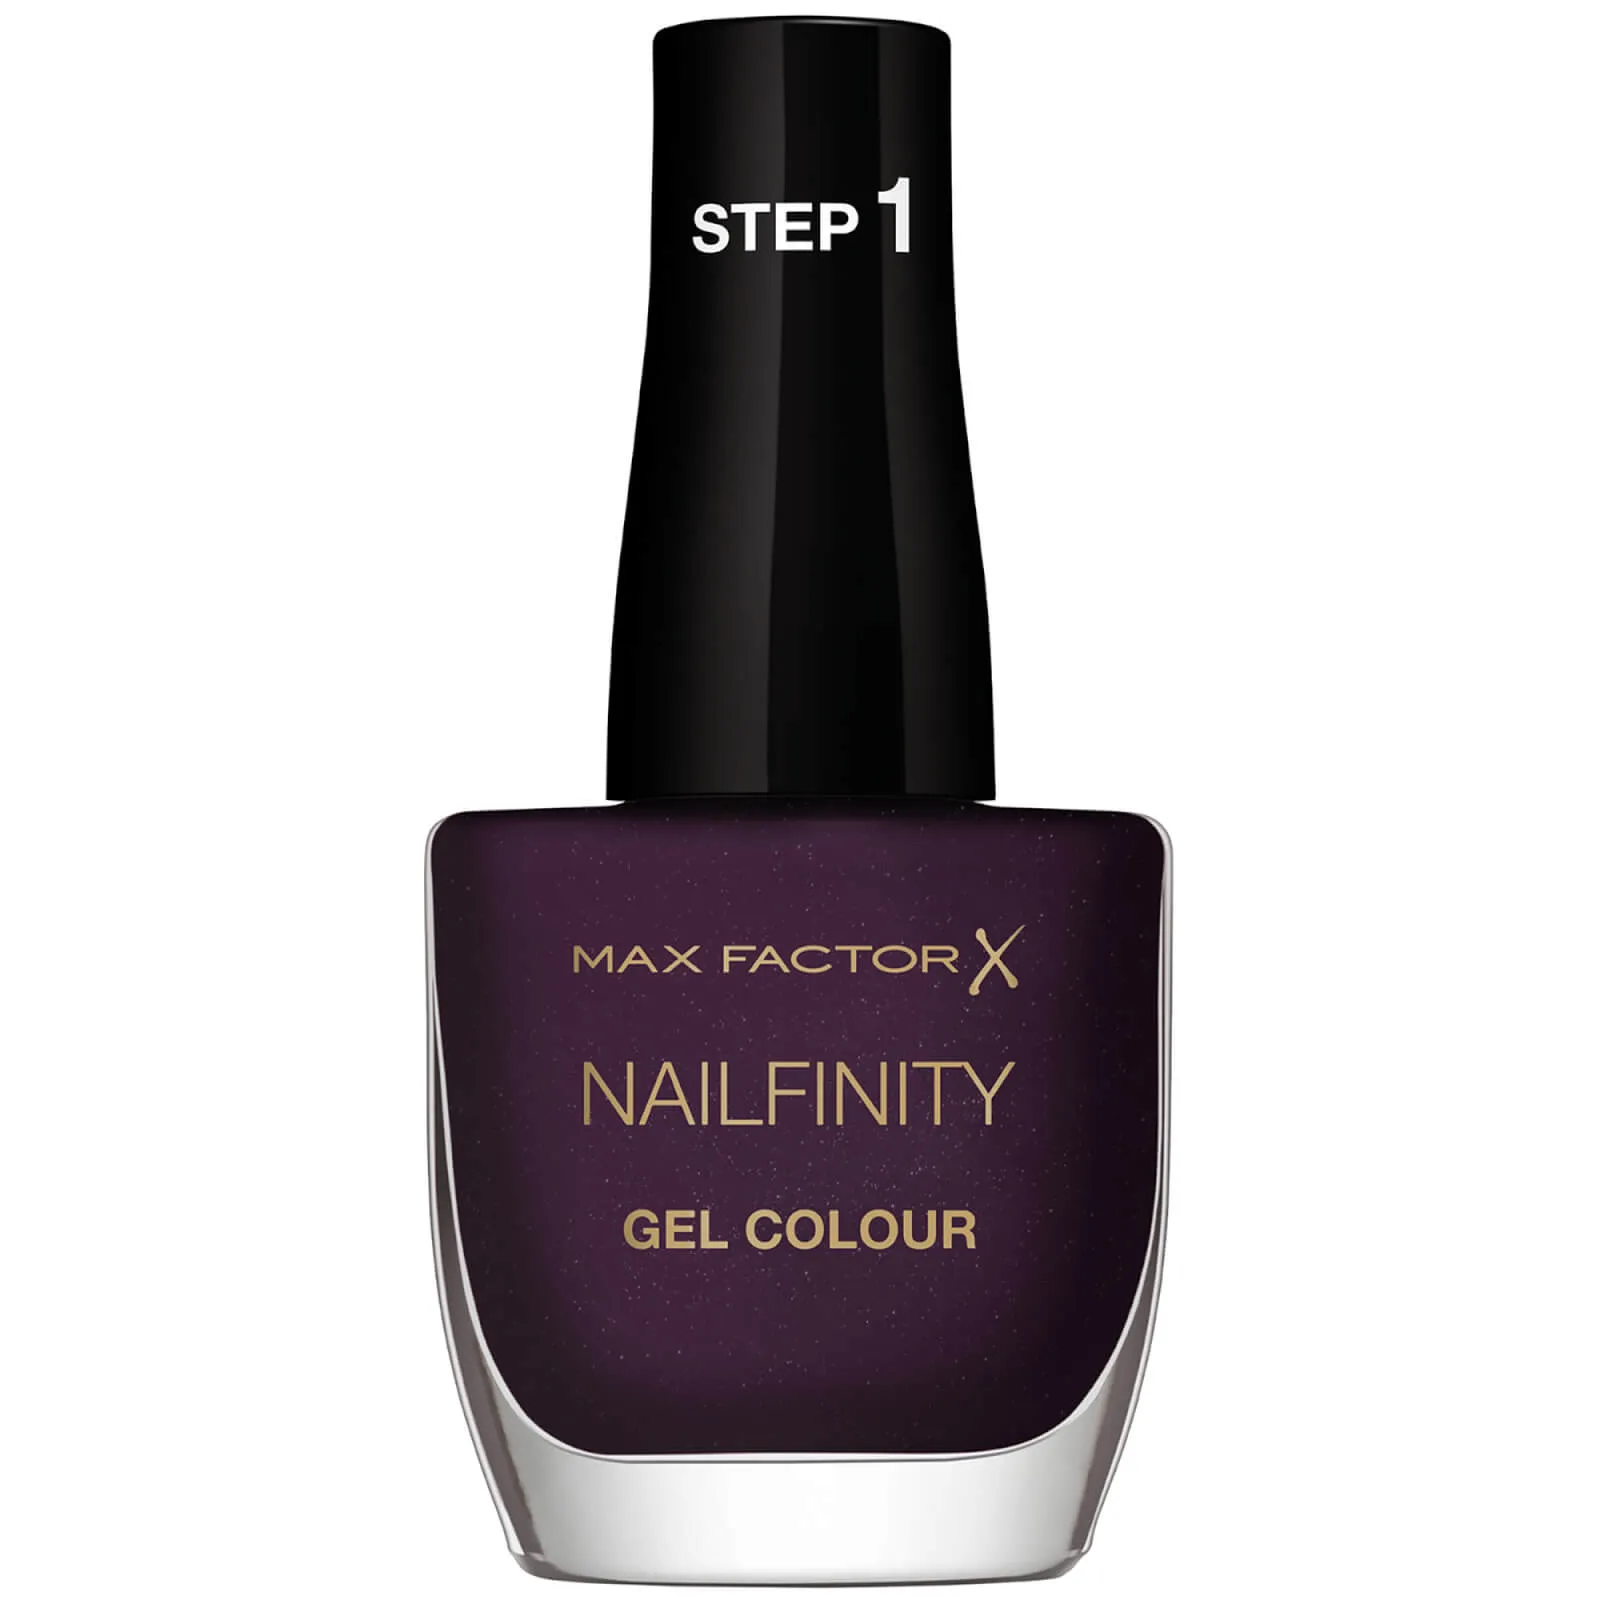  Nailfinity Gel Nail Polish 12ml (Various Shades) -  270 - Glamour Galore